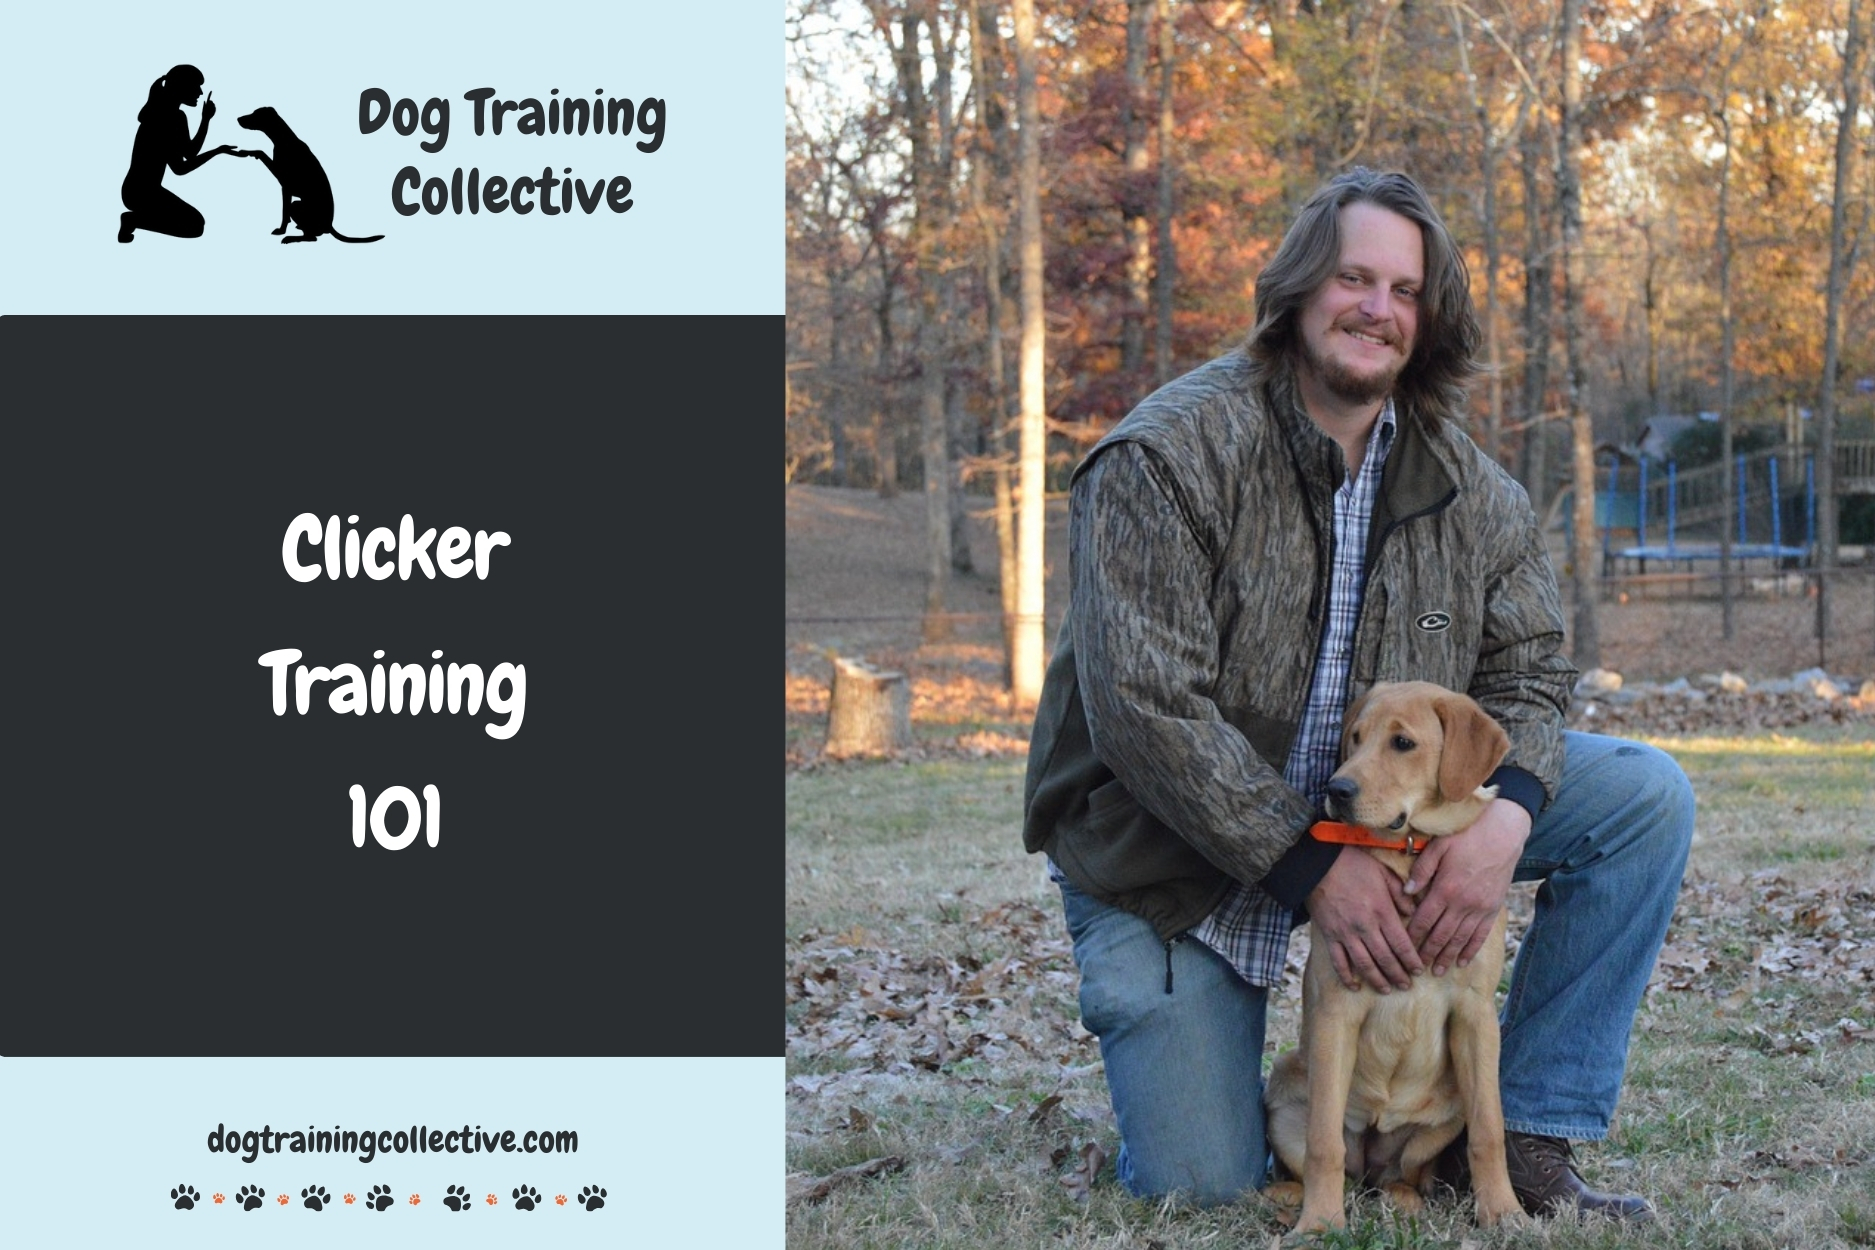 Clicker Training 101